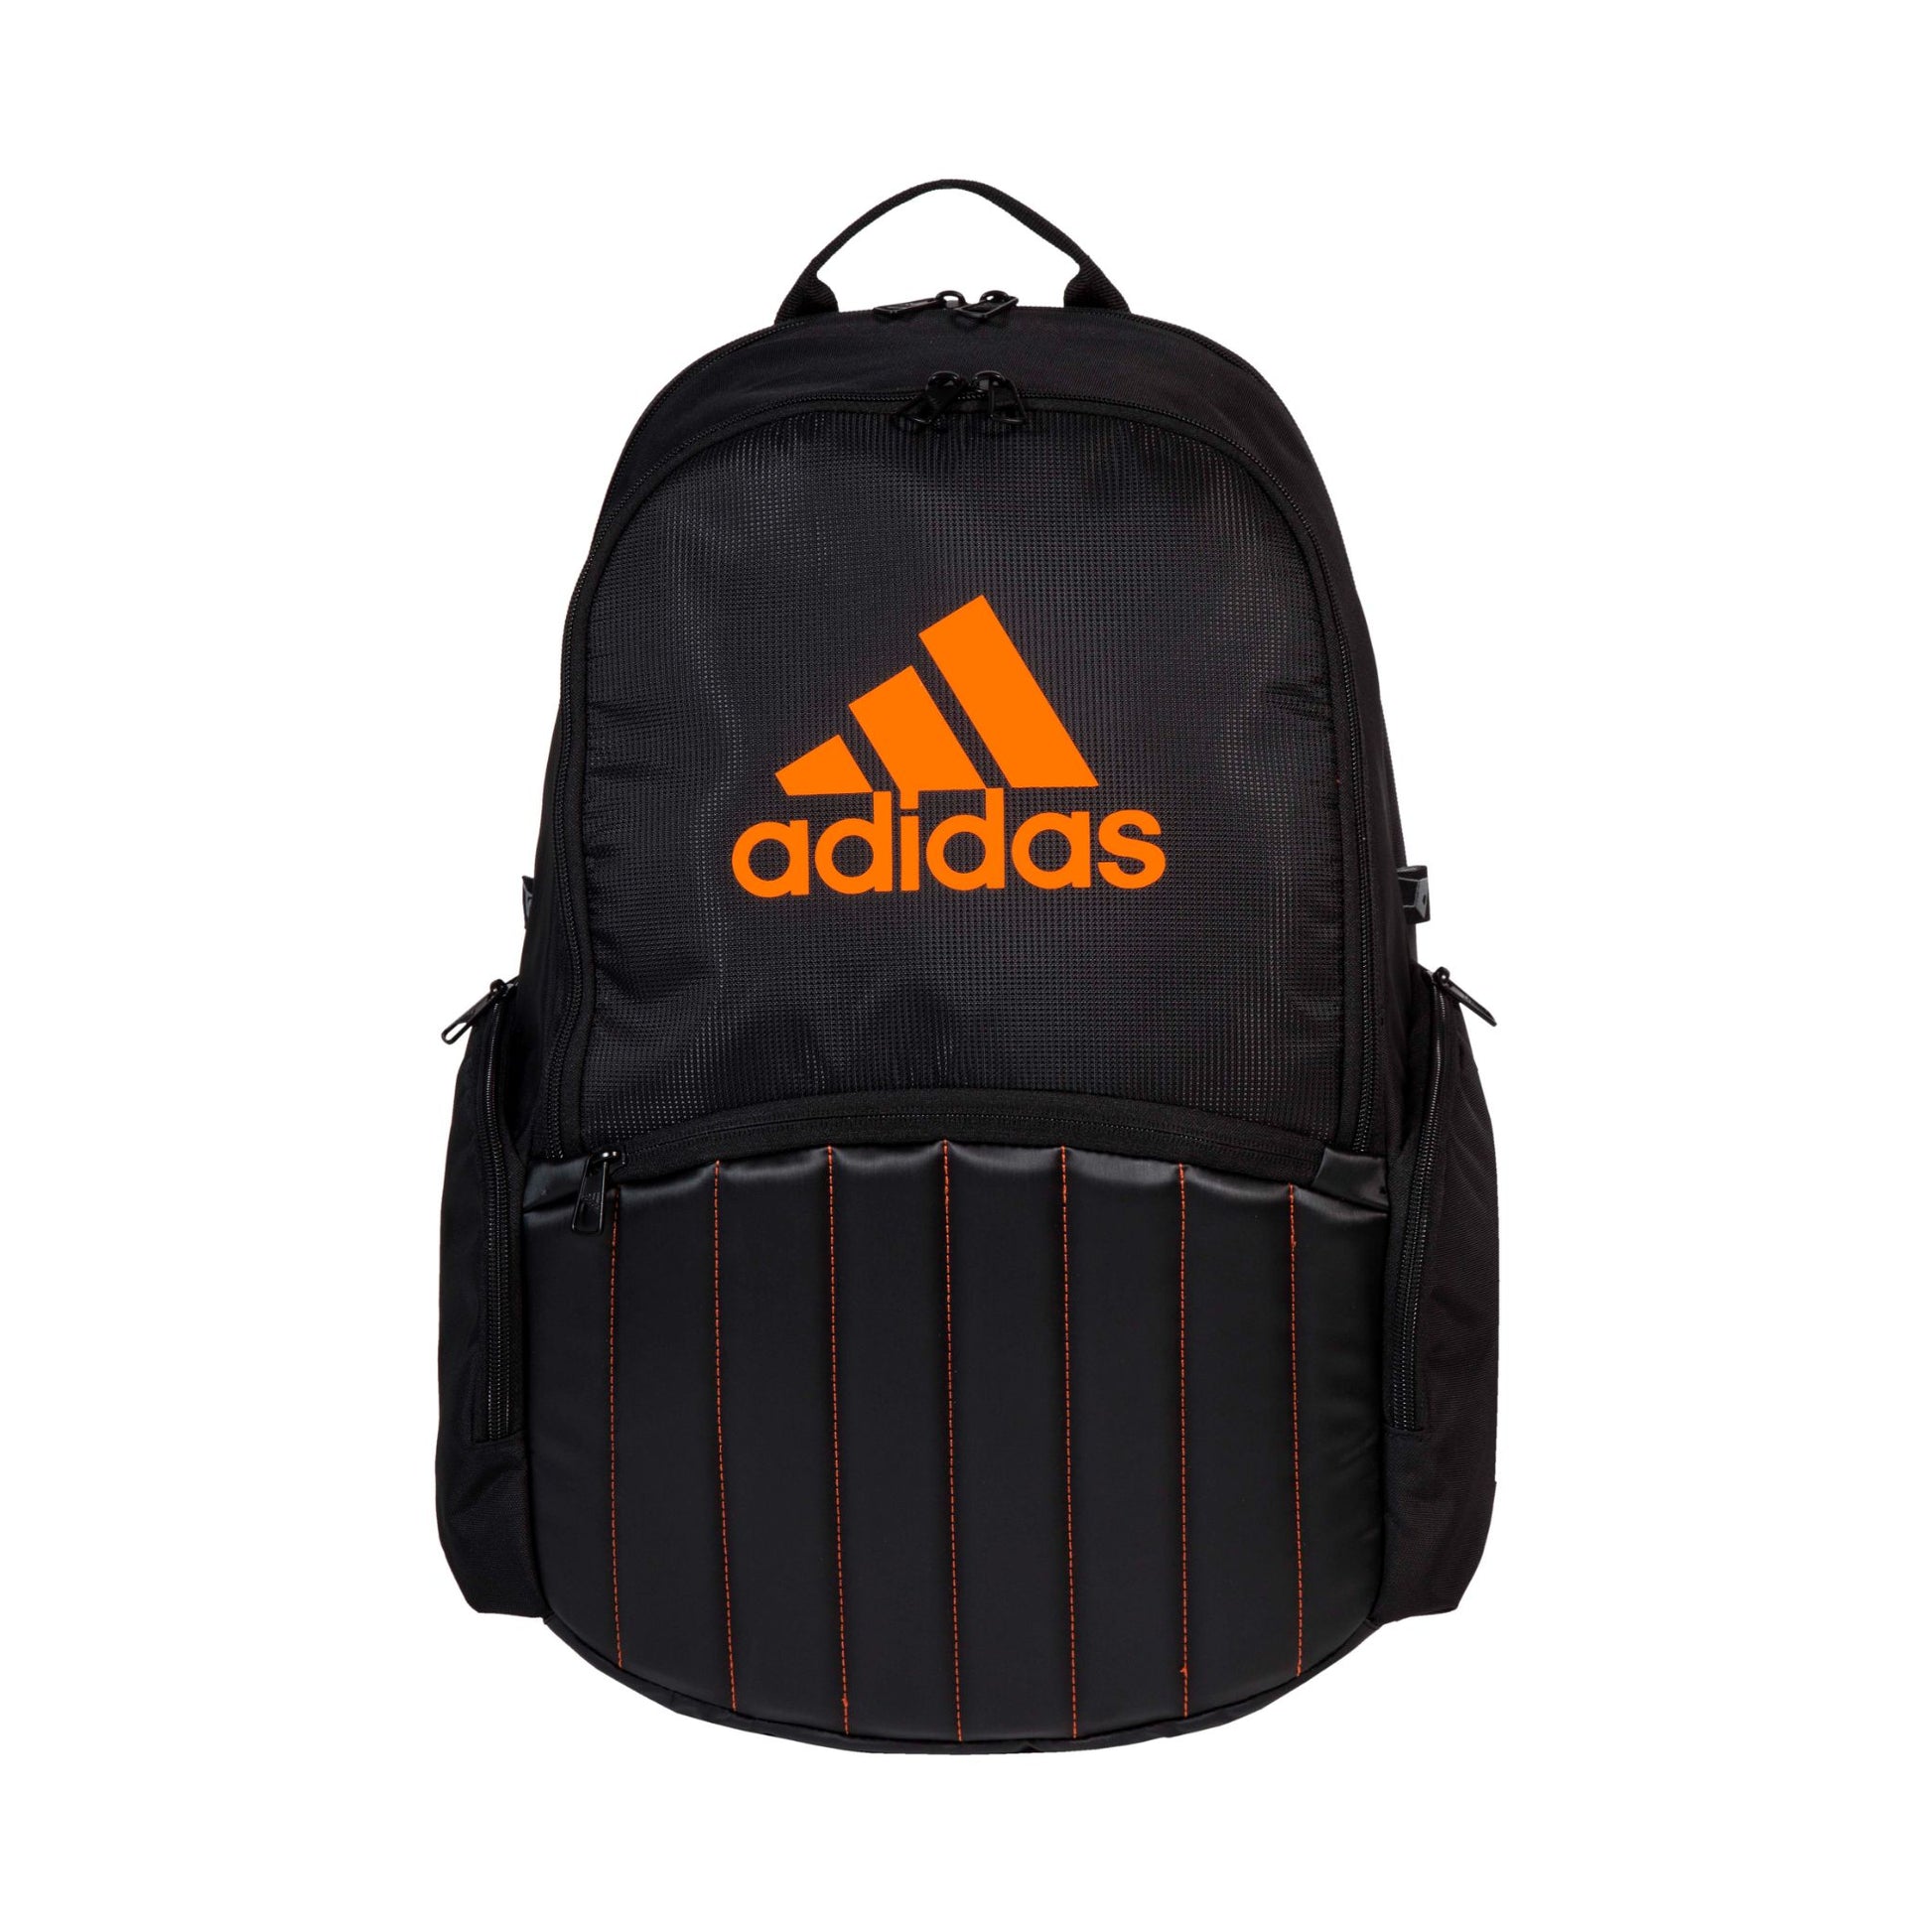 Adidas Protour Backpack - Orange